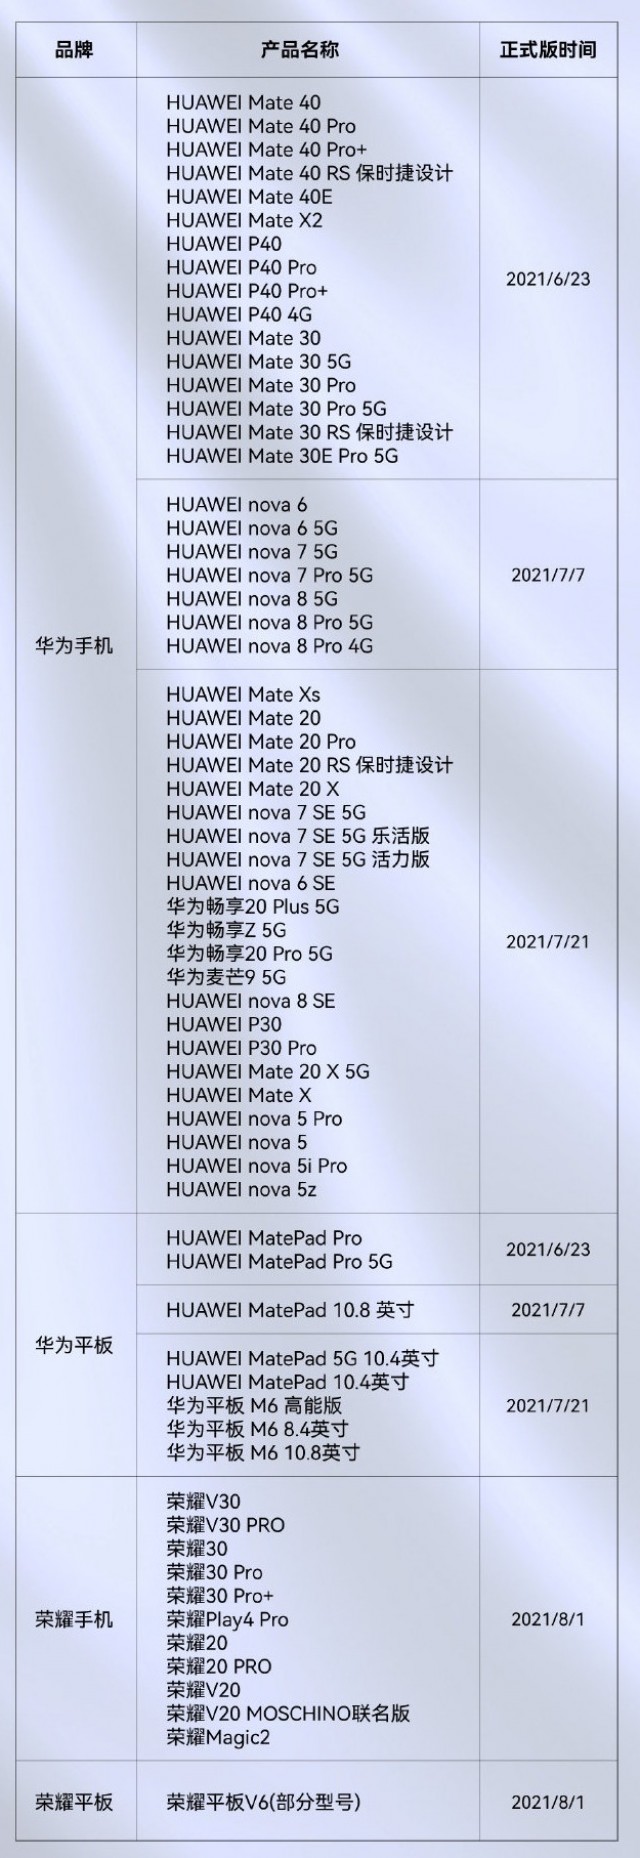 Liste complète des appareils Huawei et Honor